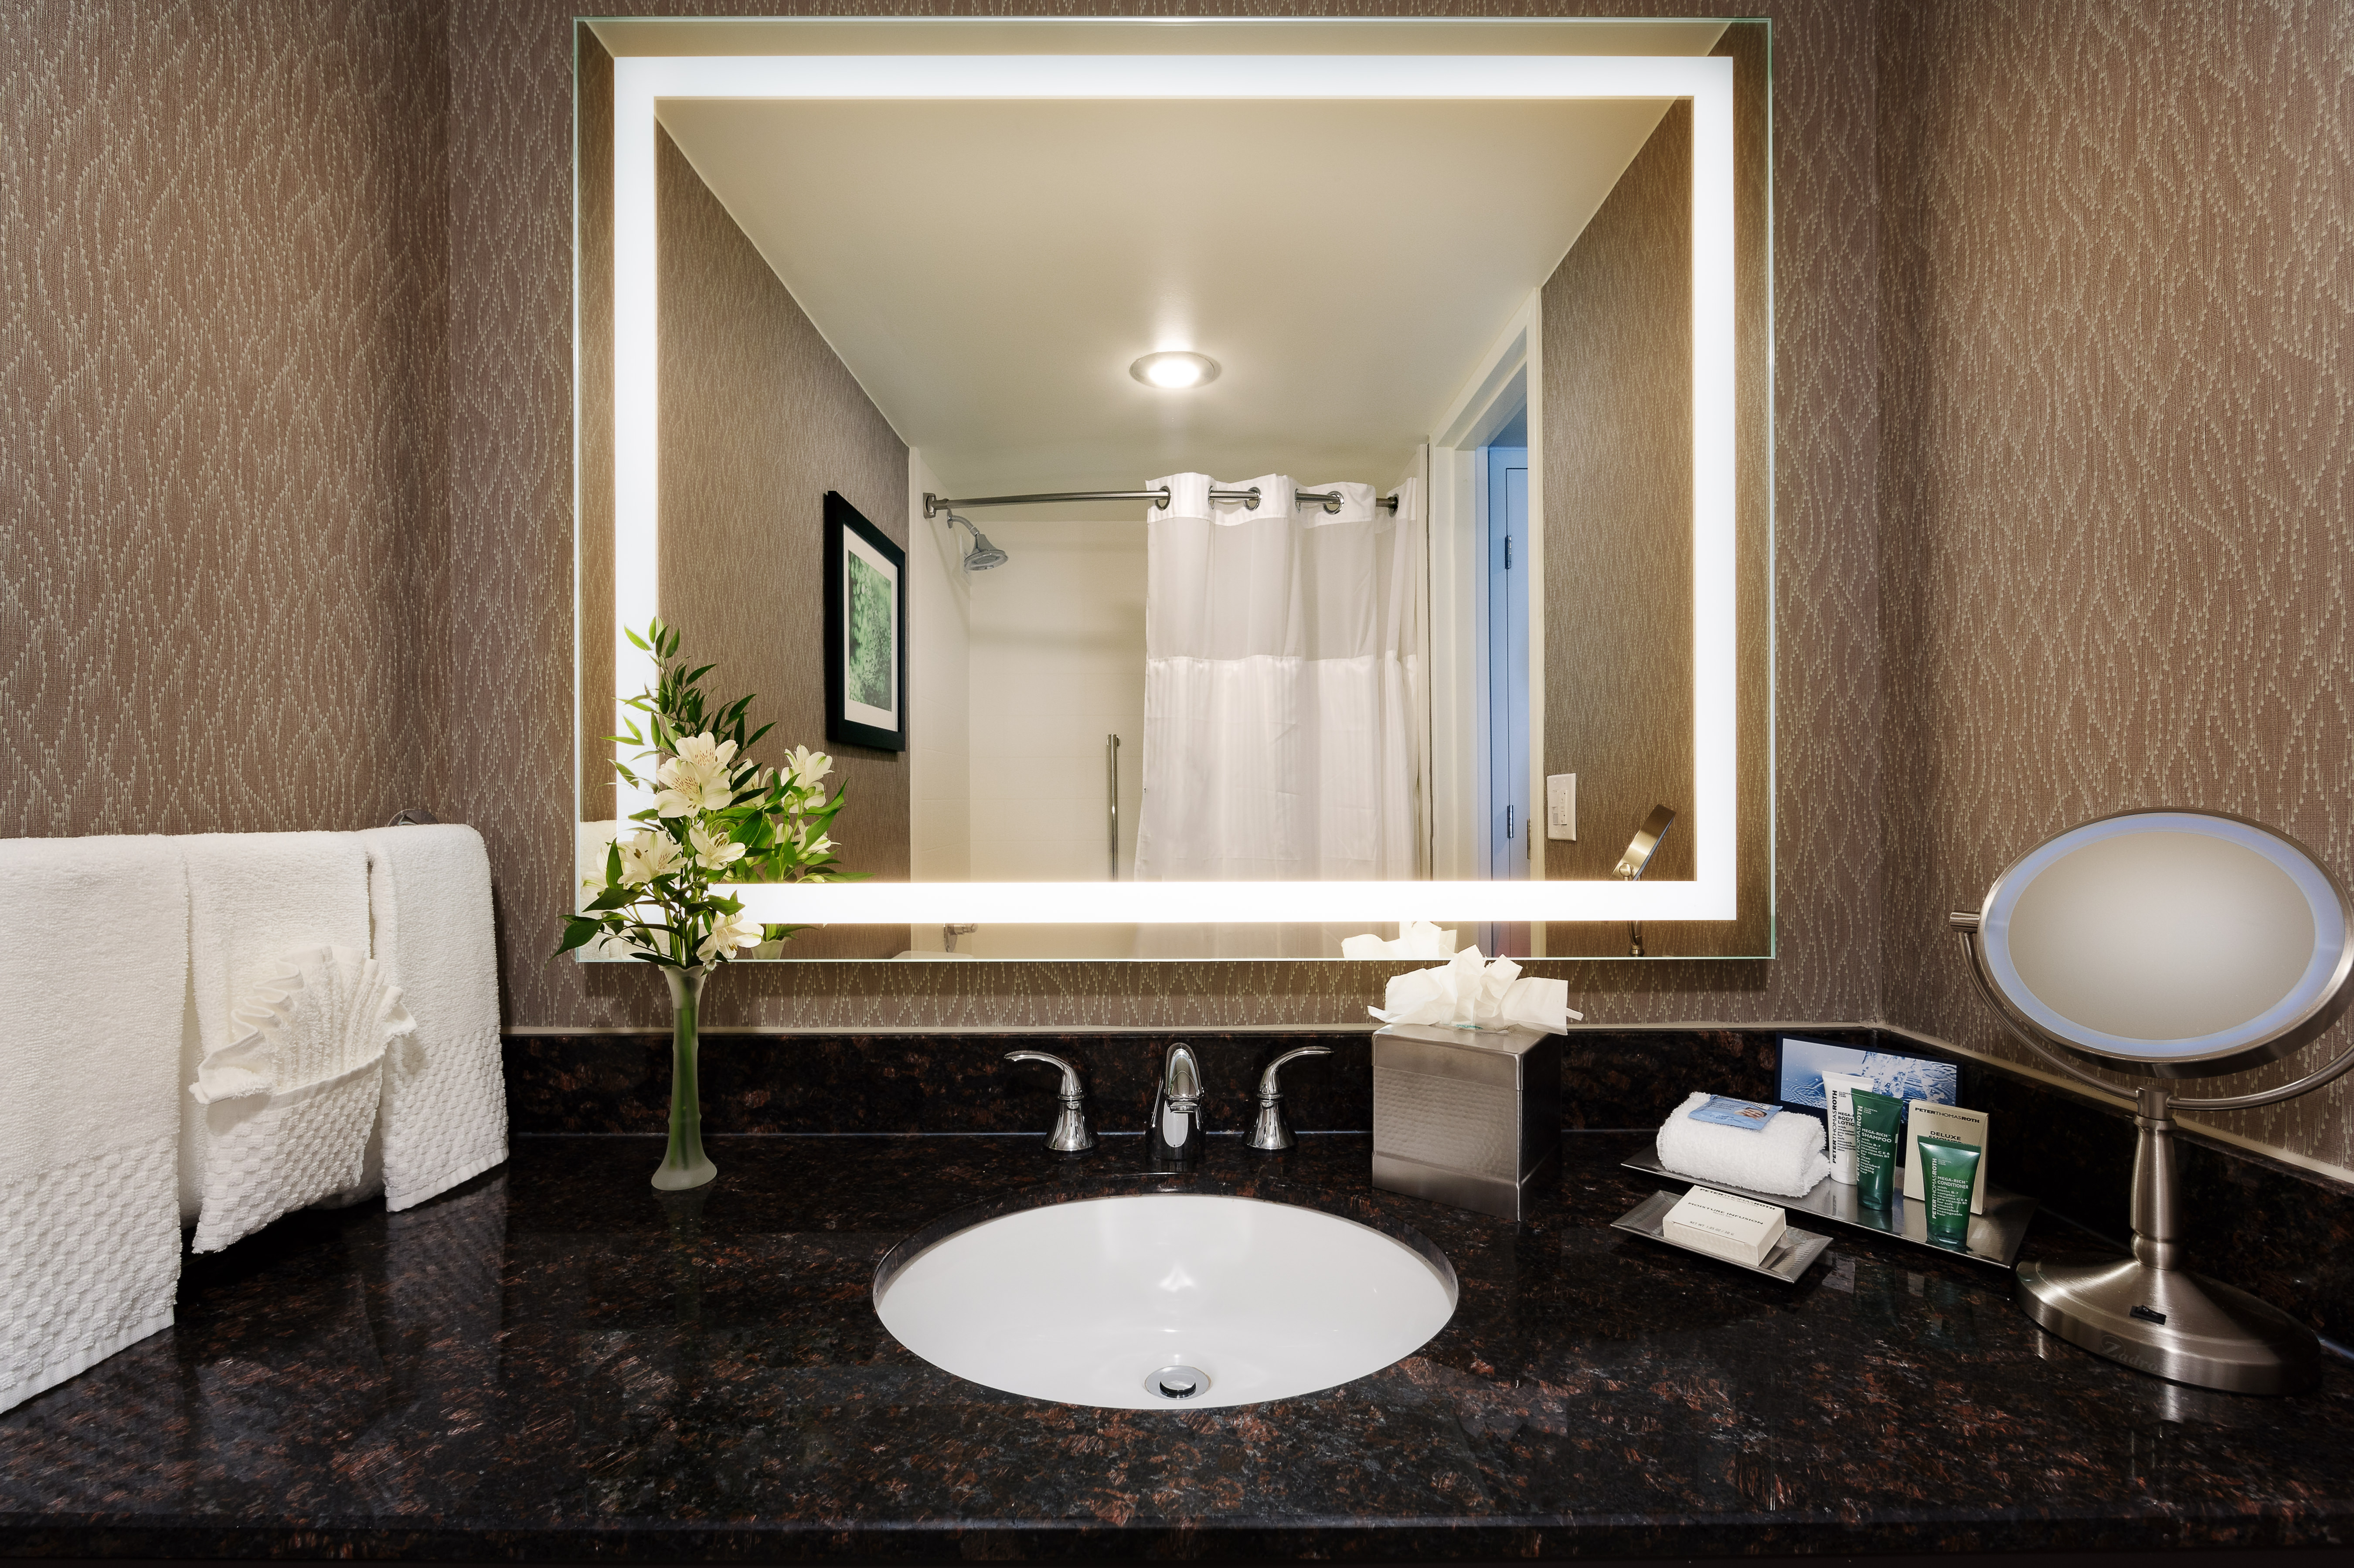 Guest bathroom with vanity mirror, sink, bathroom amenities, and towels